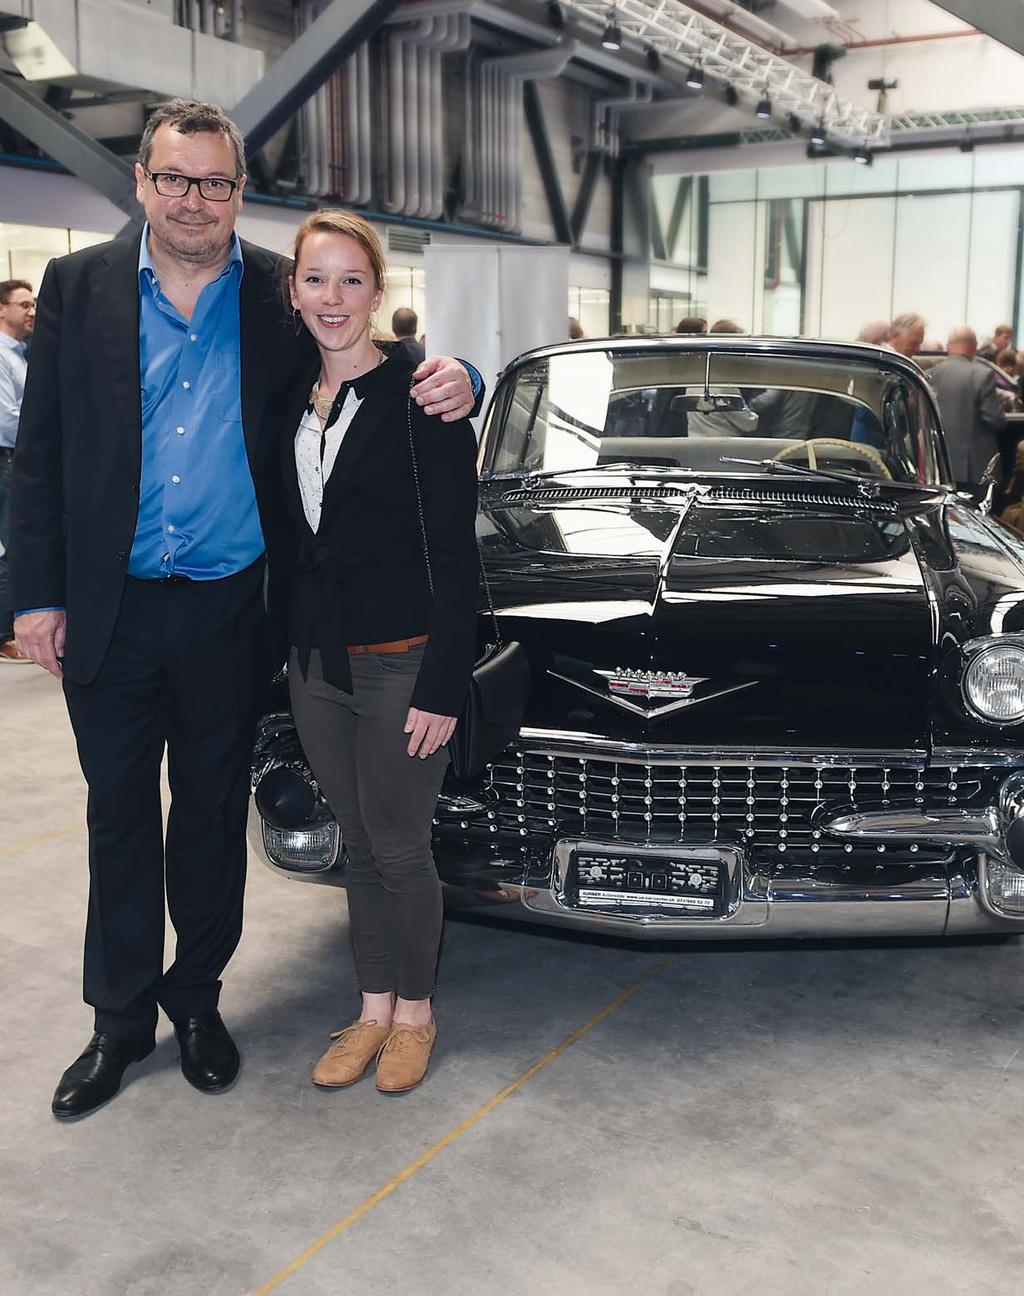 Claude Konrad, CEO da Polydec SA, e sua filha Vanina em frente a um Cadillac que traz o selo